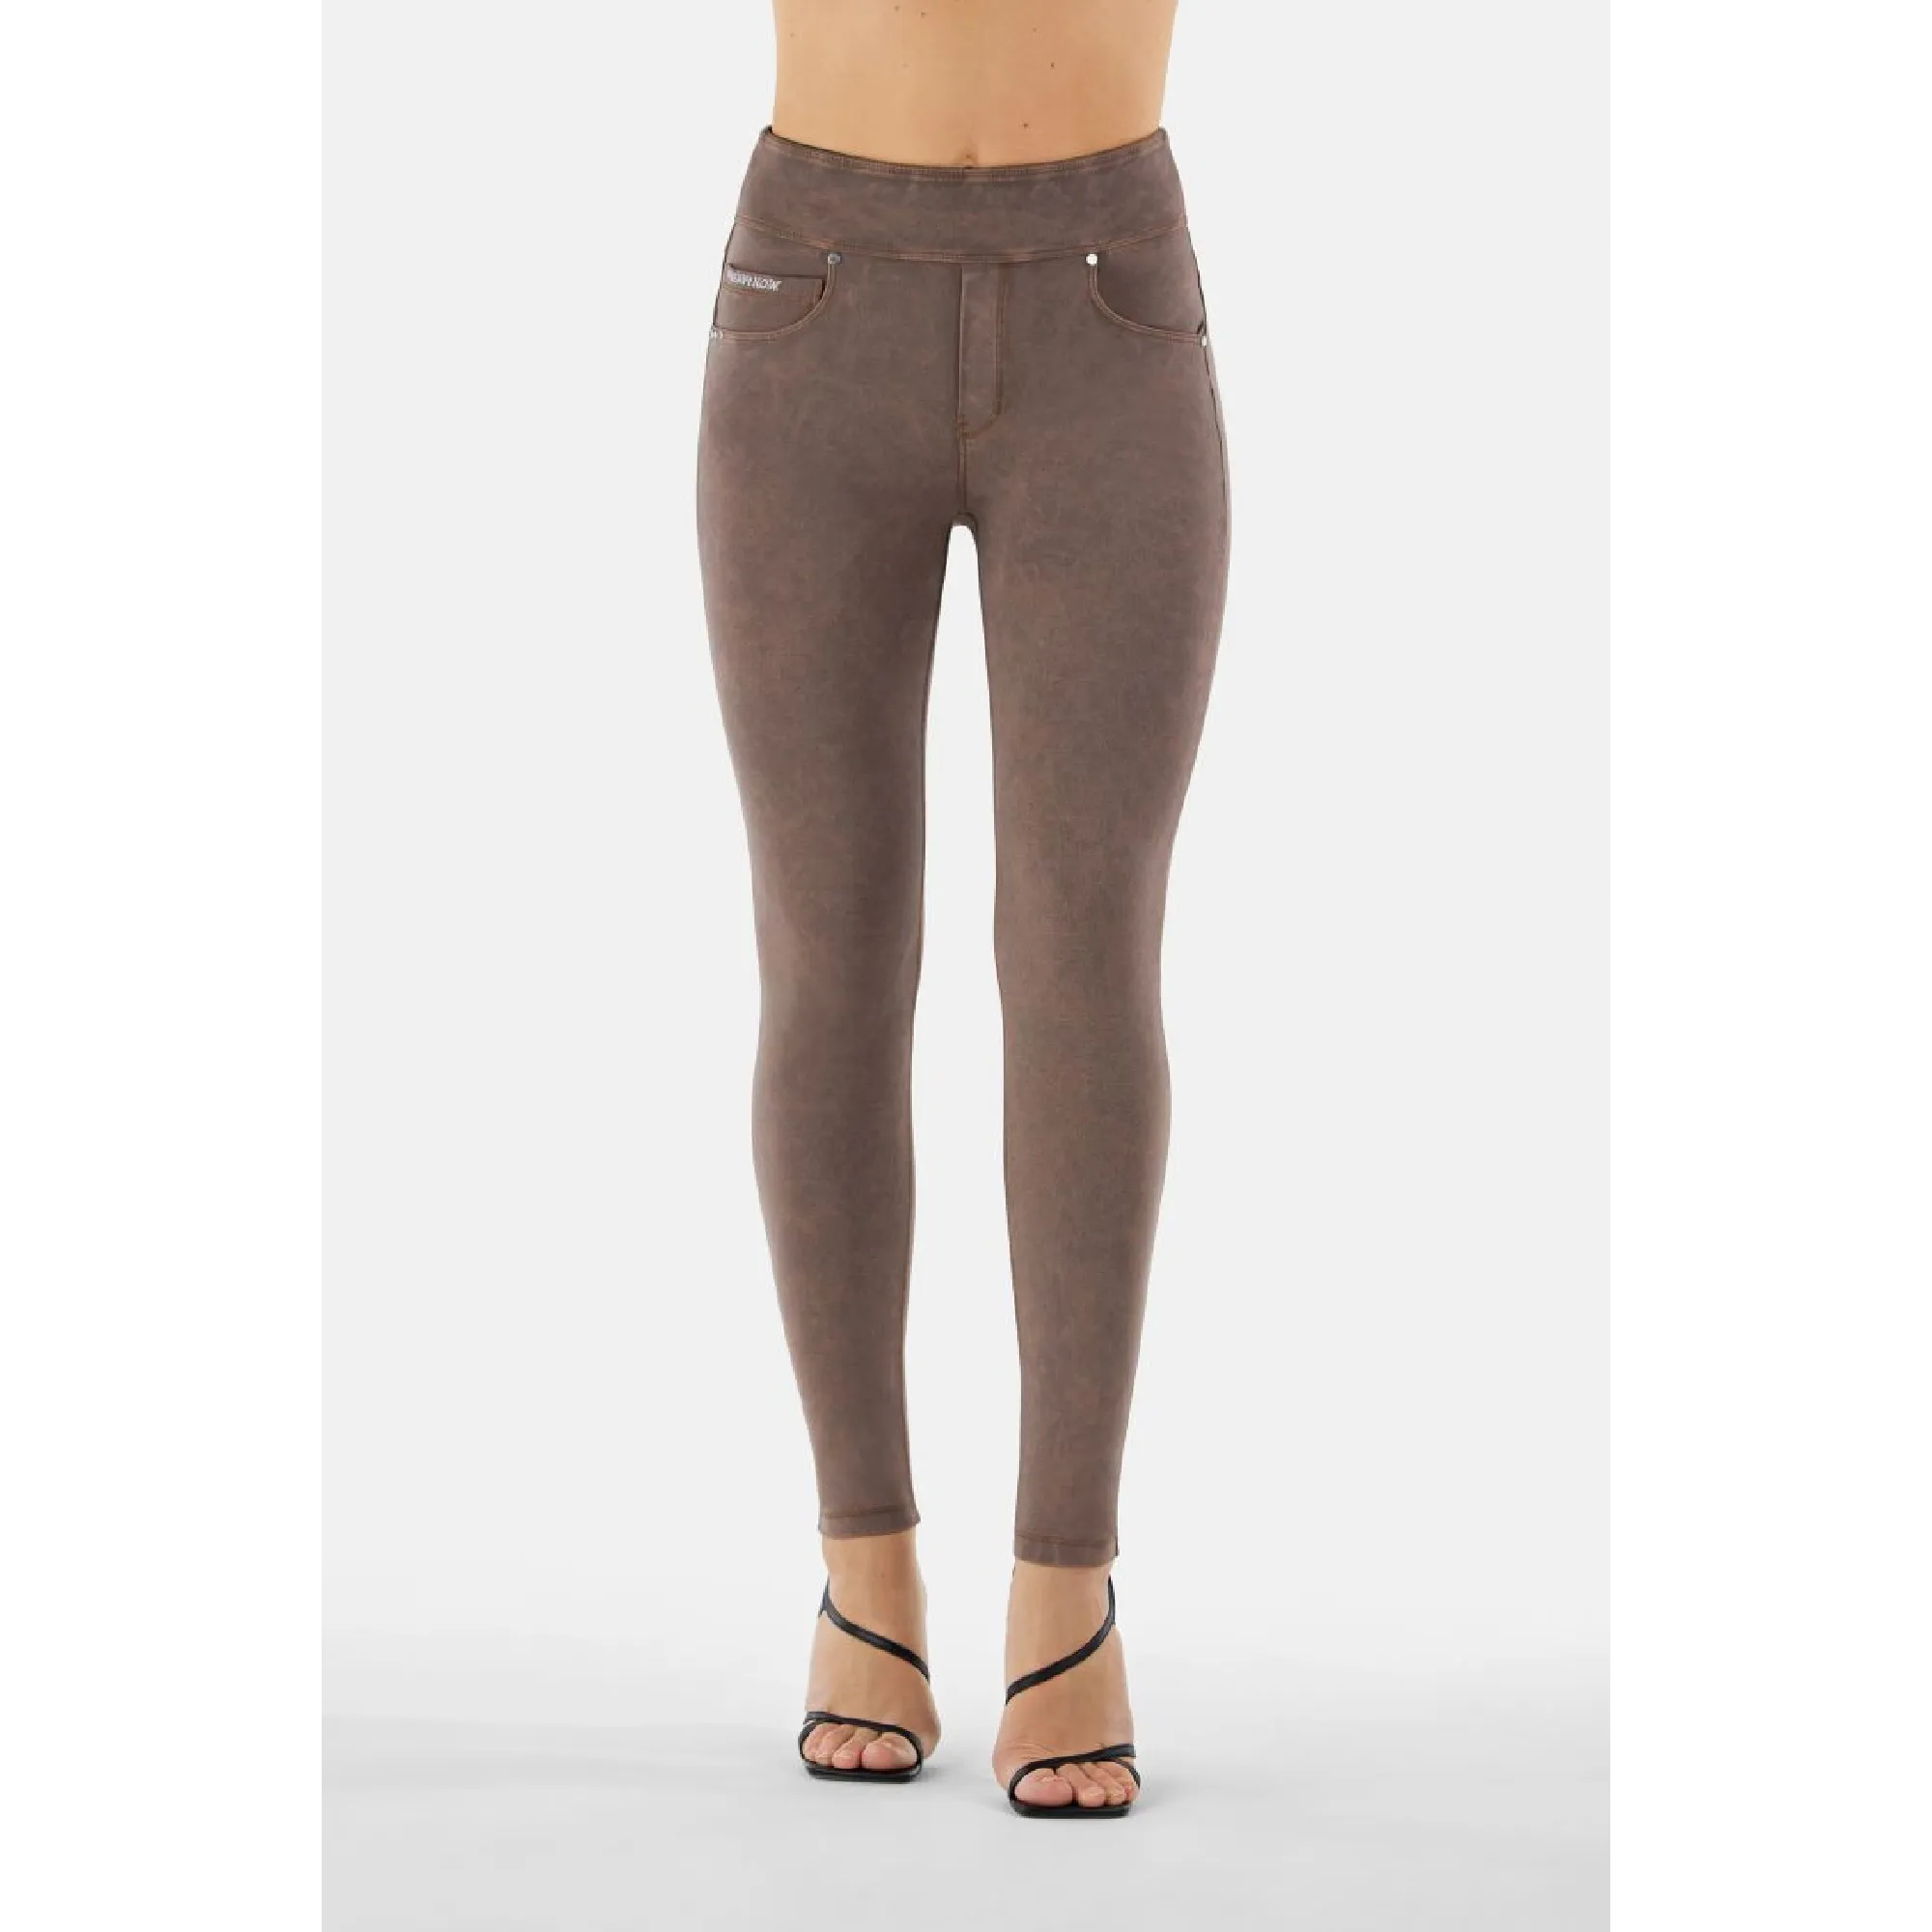 N.O.W.® Yoga - Skinny mit umschlagbarem Taillenbund - Garment Dyed - Aztec - M1010